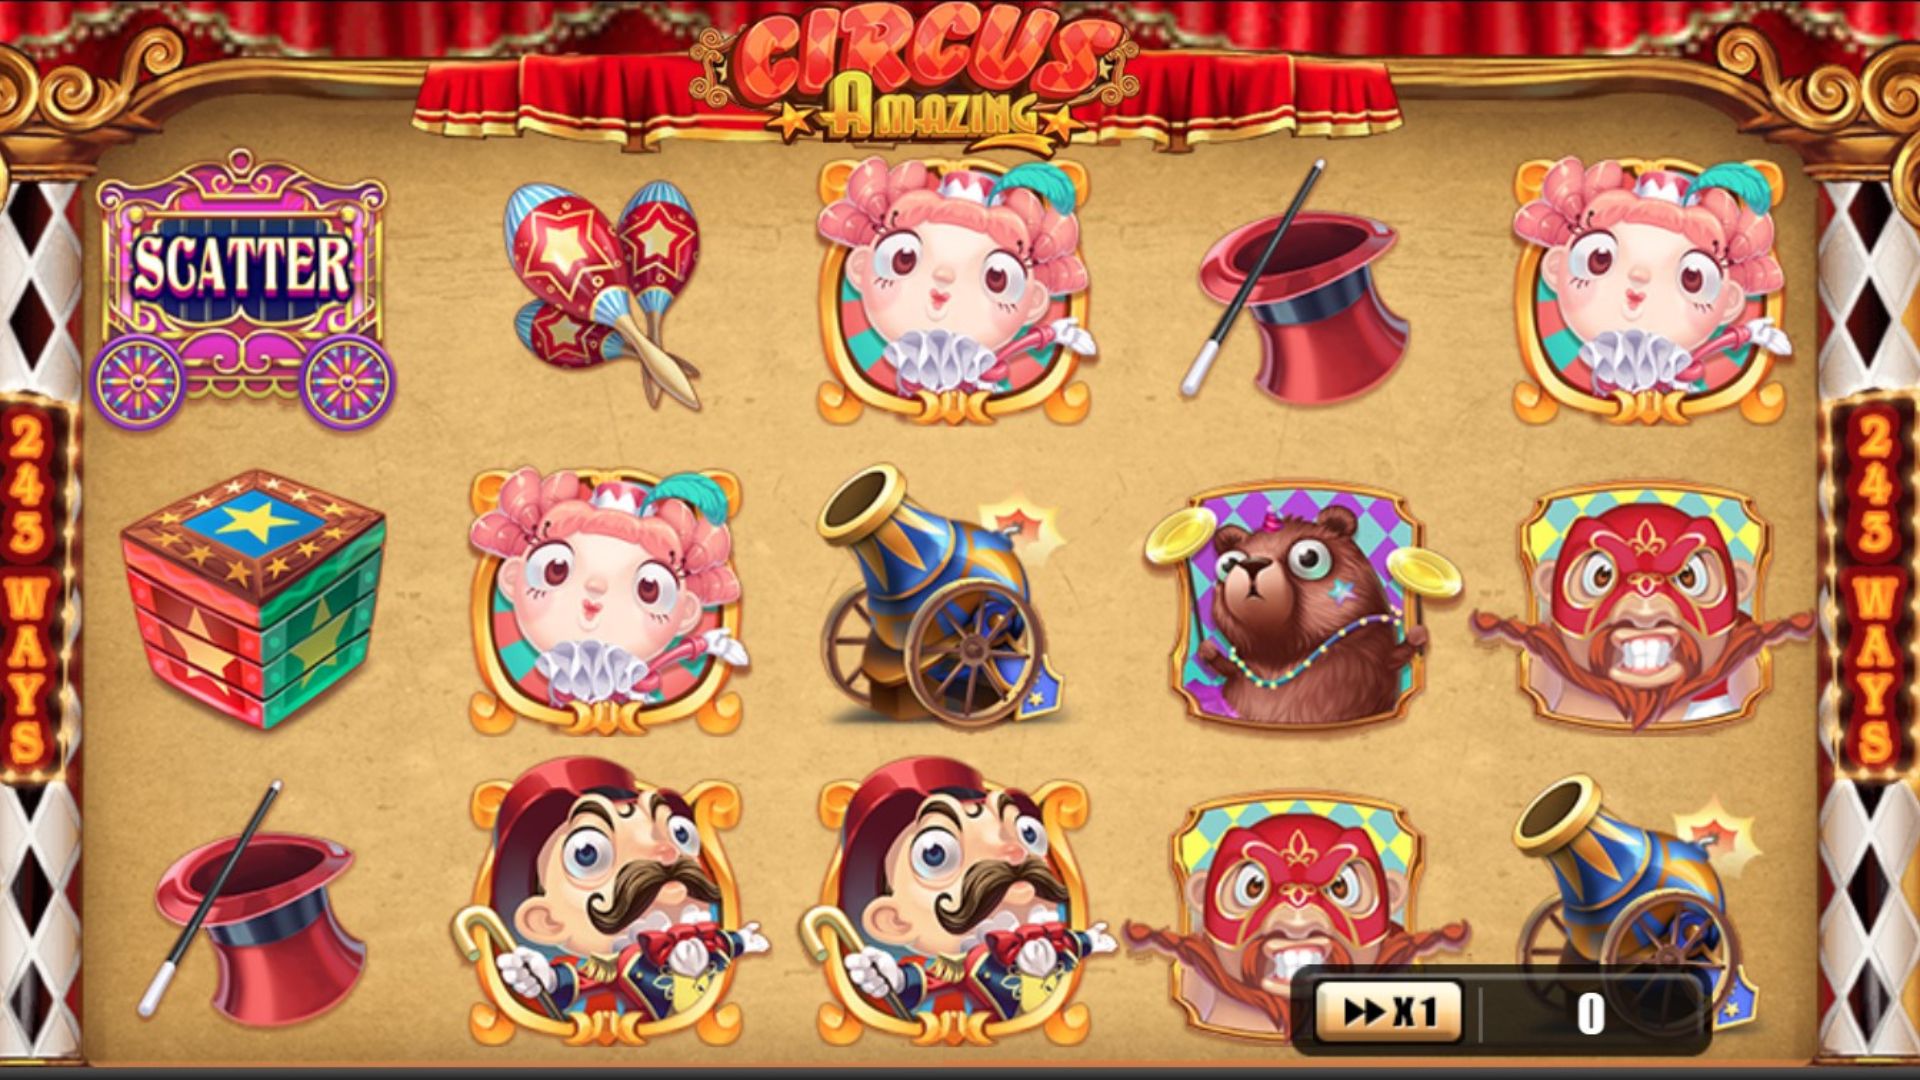 gameplay slot amazing circus